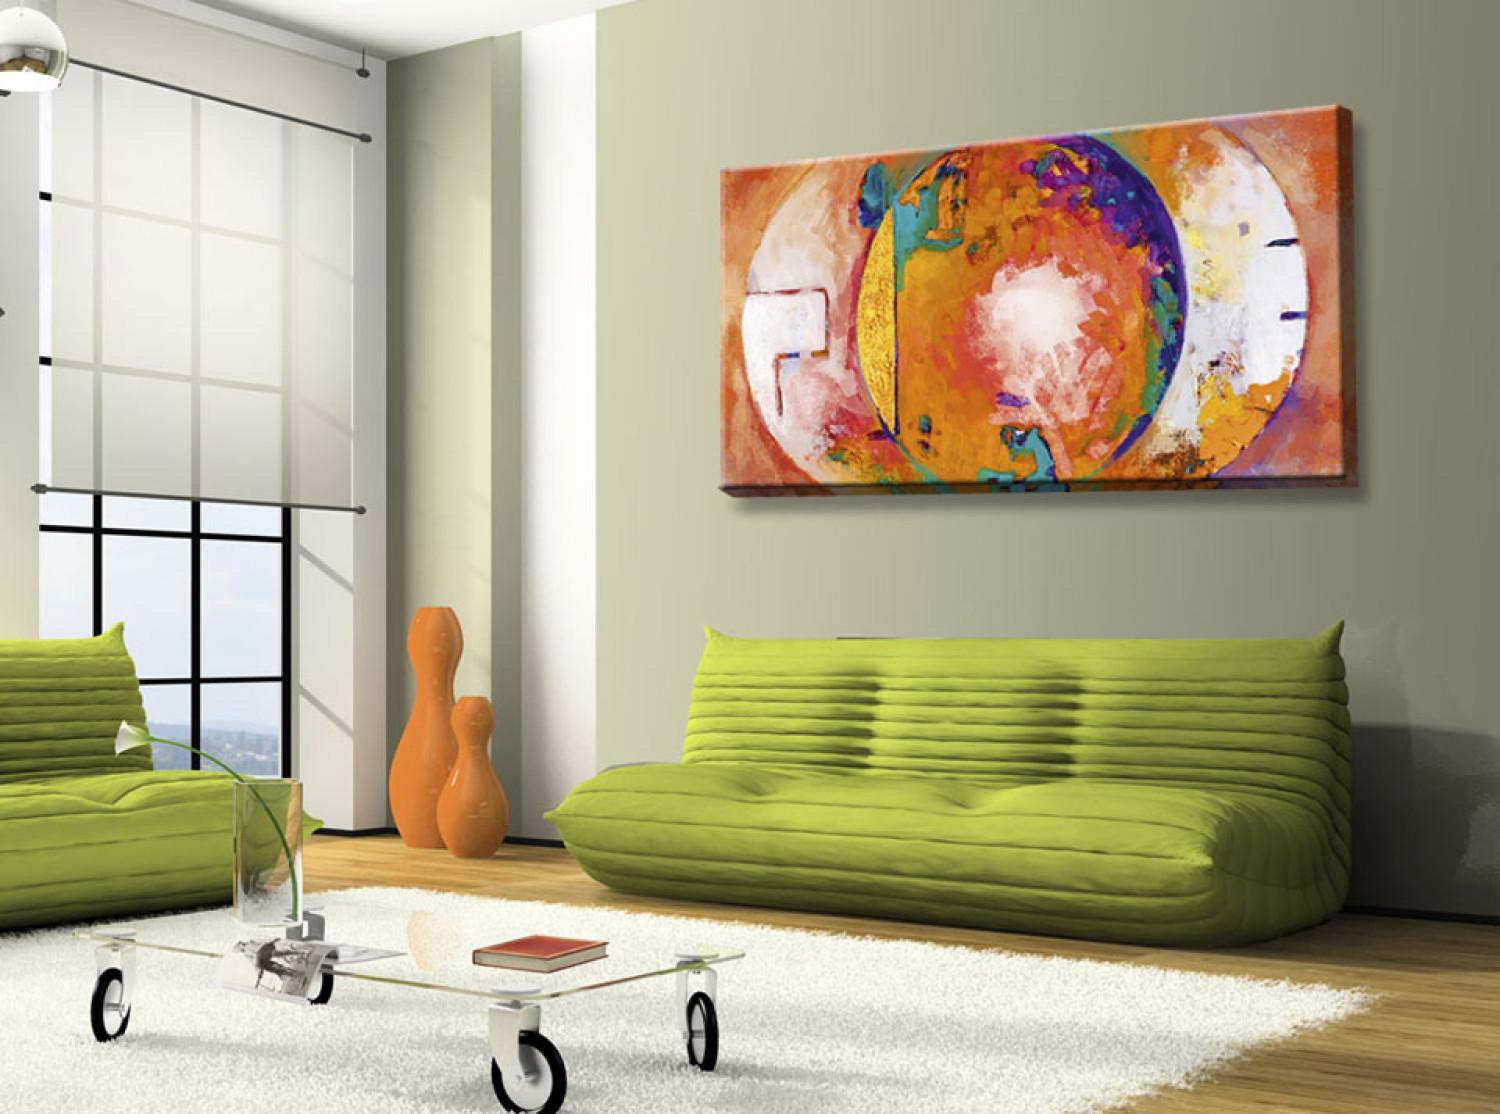 Cuadro decorativo Sueño naranja (1 pieza) - abstracción con fantasía colorida